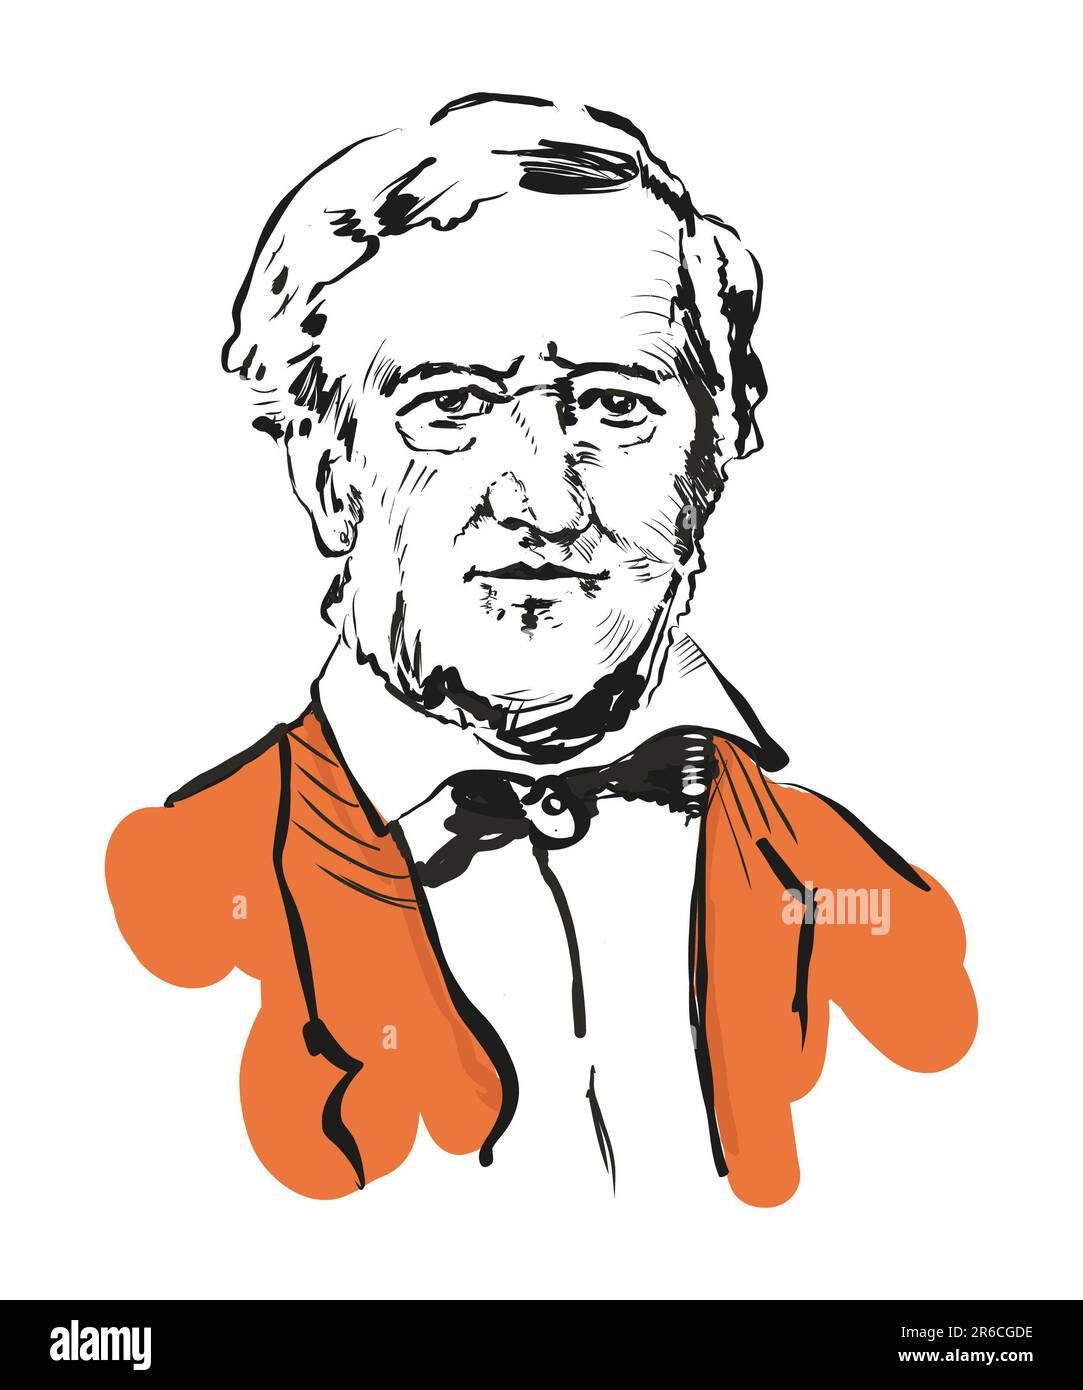 Image portrait de Richard Wagner, illustration vectorielle, dessin à la main noir et blanc isolé sur fond blanc Banque D'Images